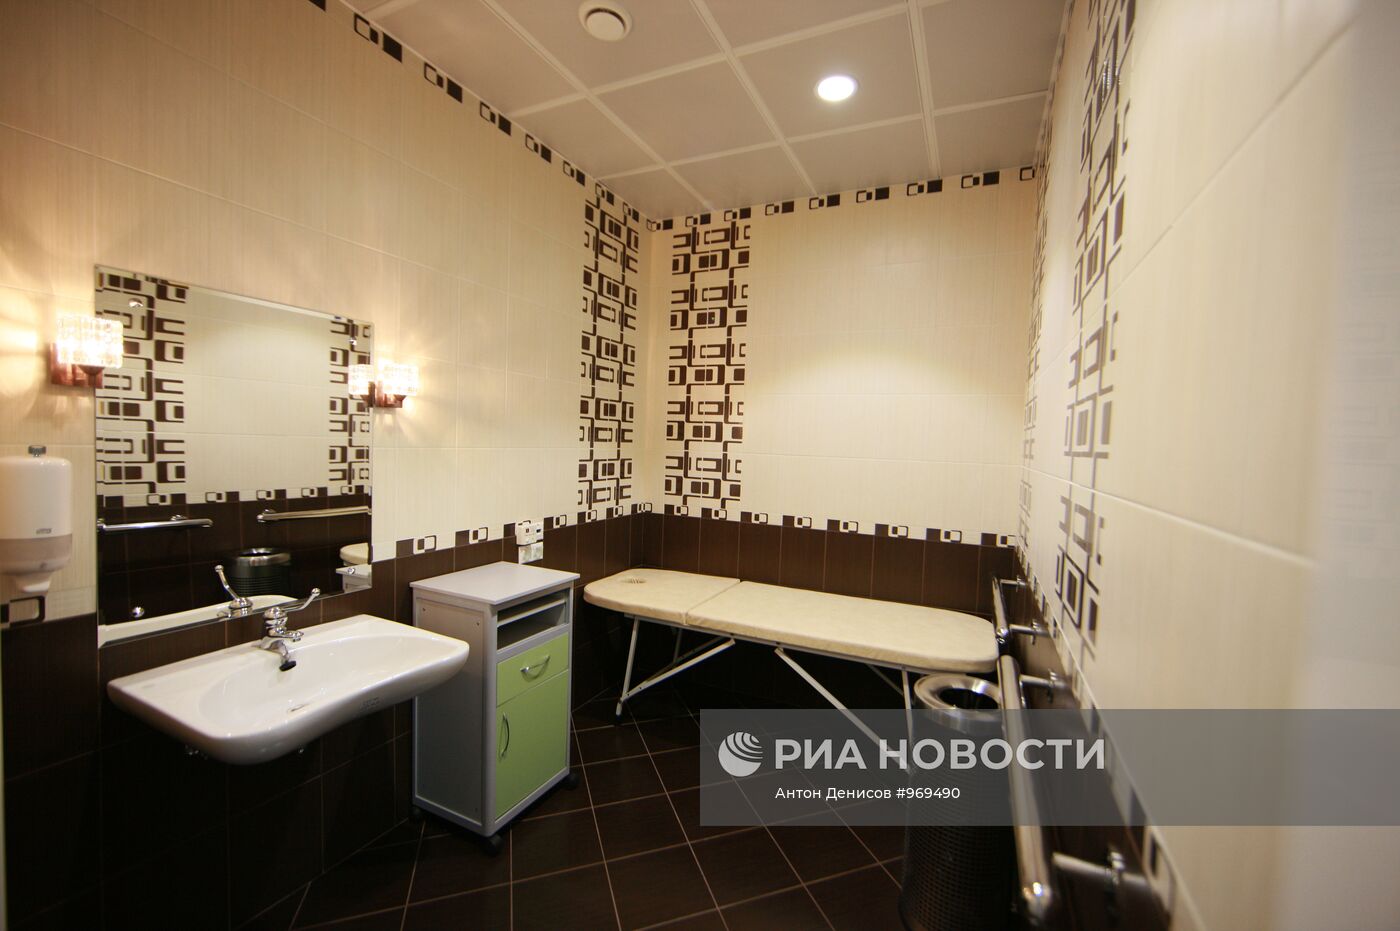 Открытие зала комфорта и отдыха для инвалидов в Шереметьево